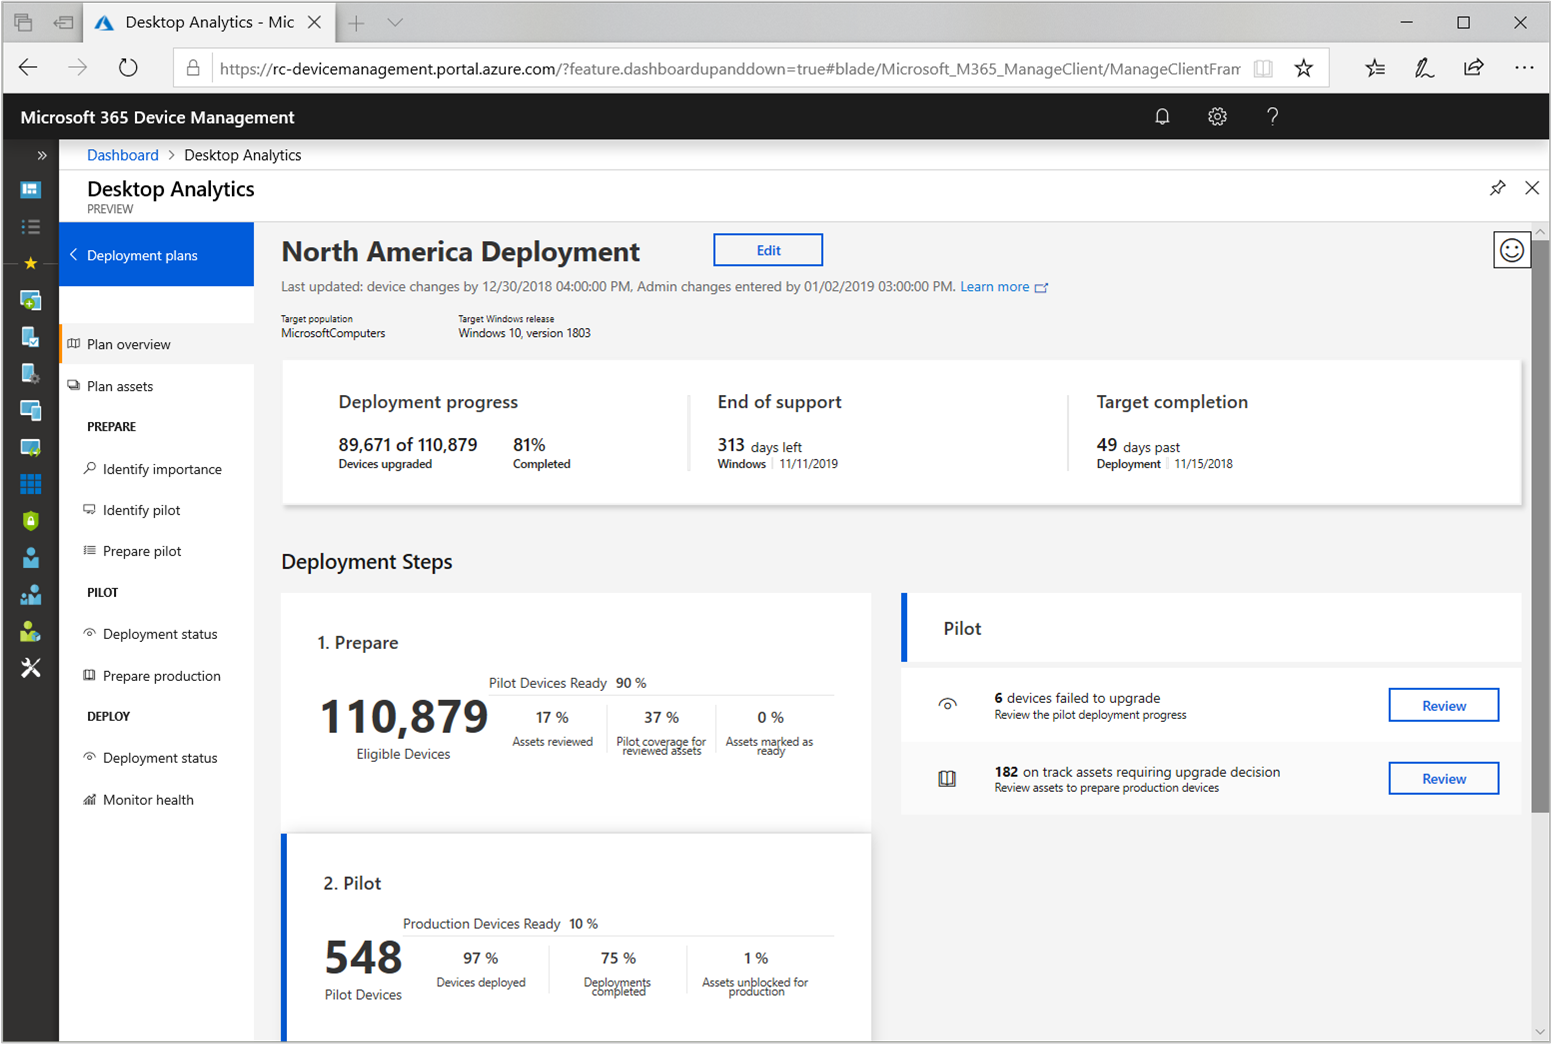 Screenshot of deployment plan overview in Desktop Analytics.